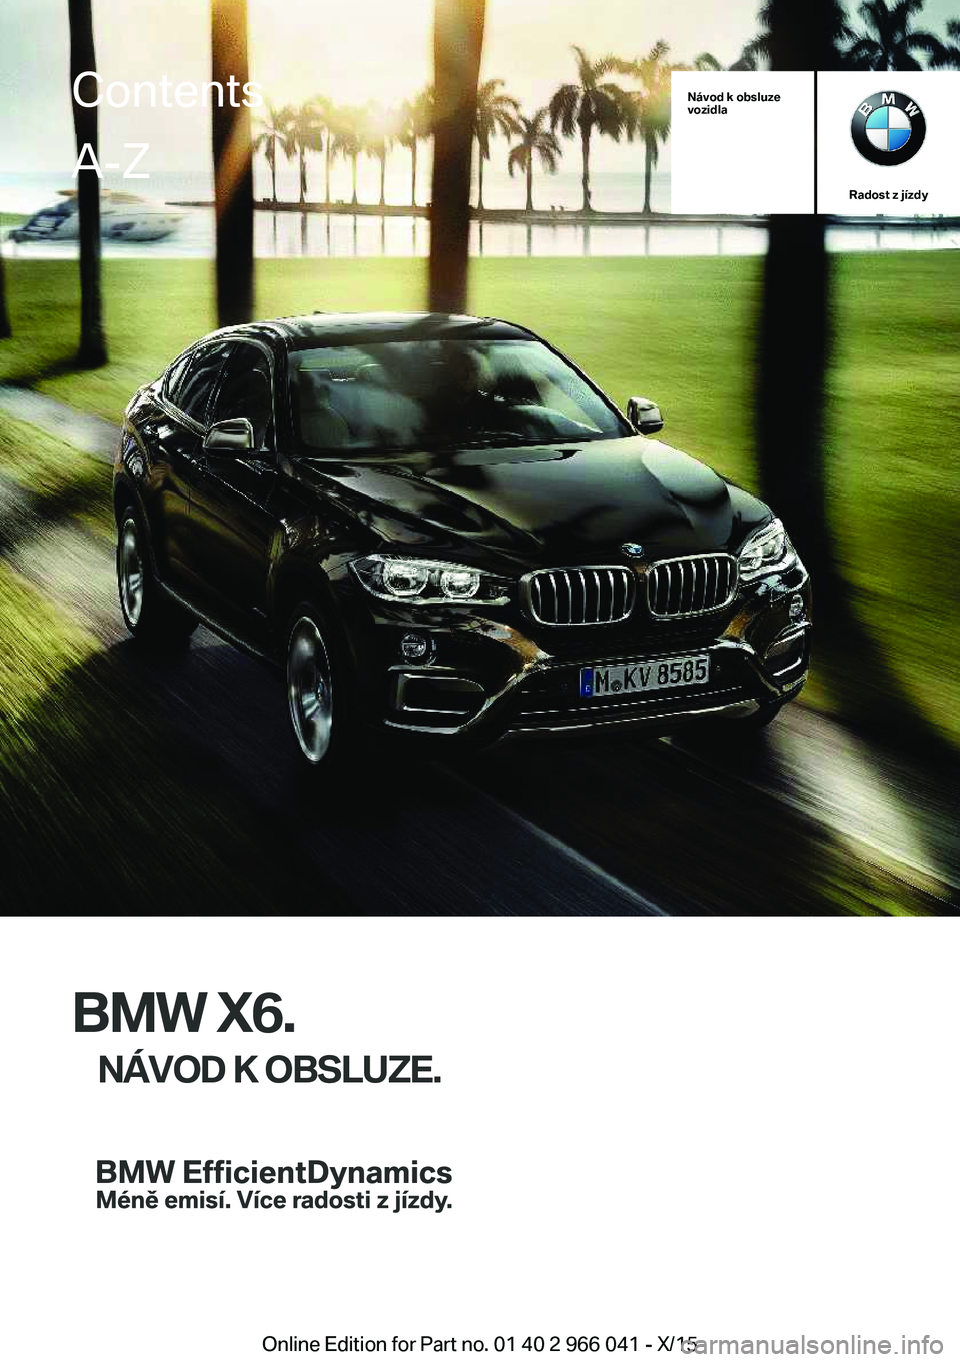 BMW X6 2016  Návod na použití (in Czech) Návod k obsluze
vozidla
Radost z jízdy
BMW X6.
NÁVOD K OBSLUZE.
ContentsA-Z
Online Edition for Part no. 01 40 2 966 041 - X/15   